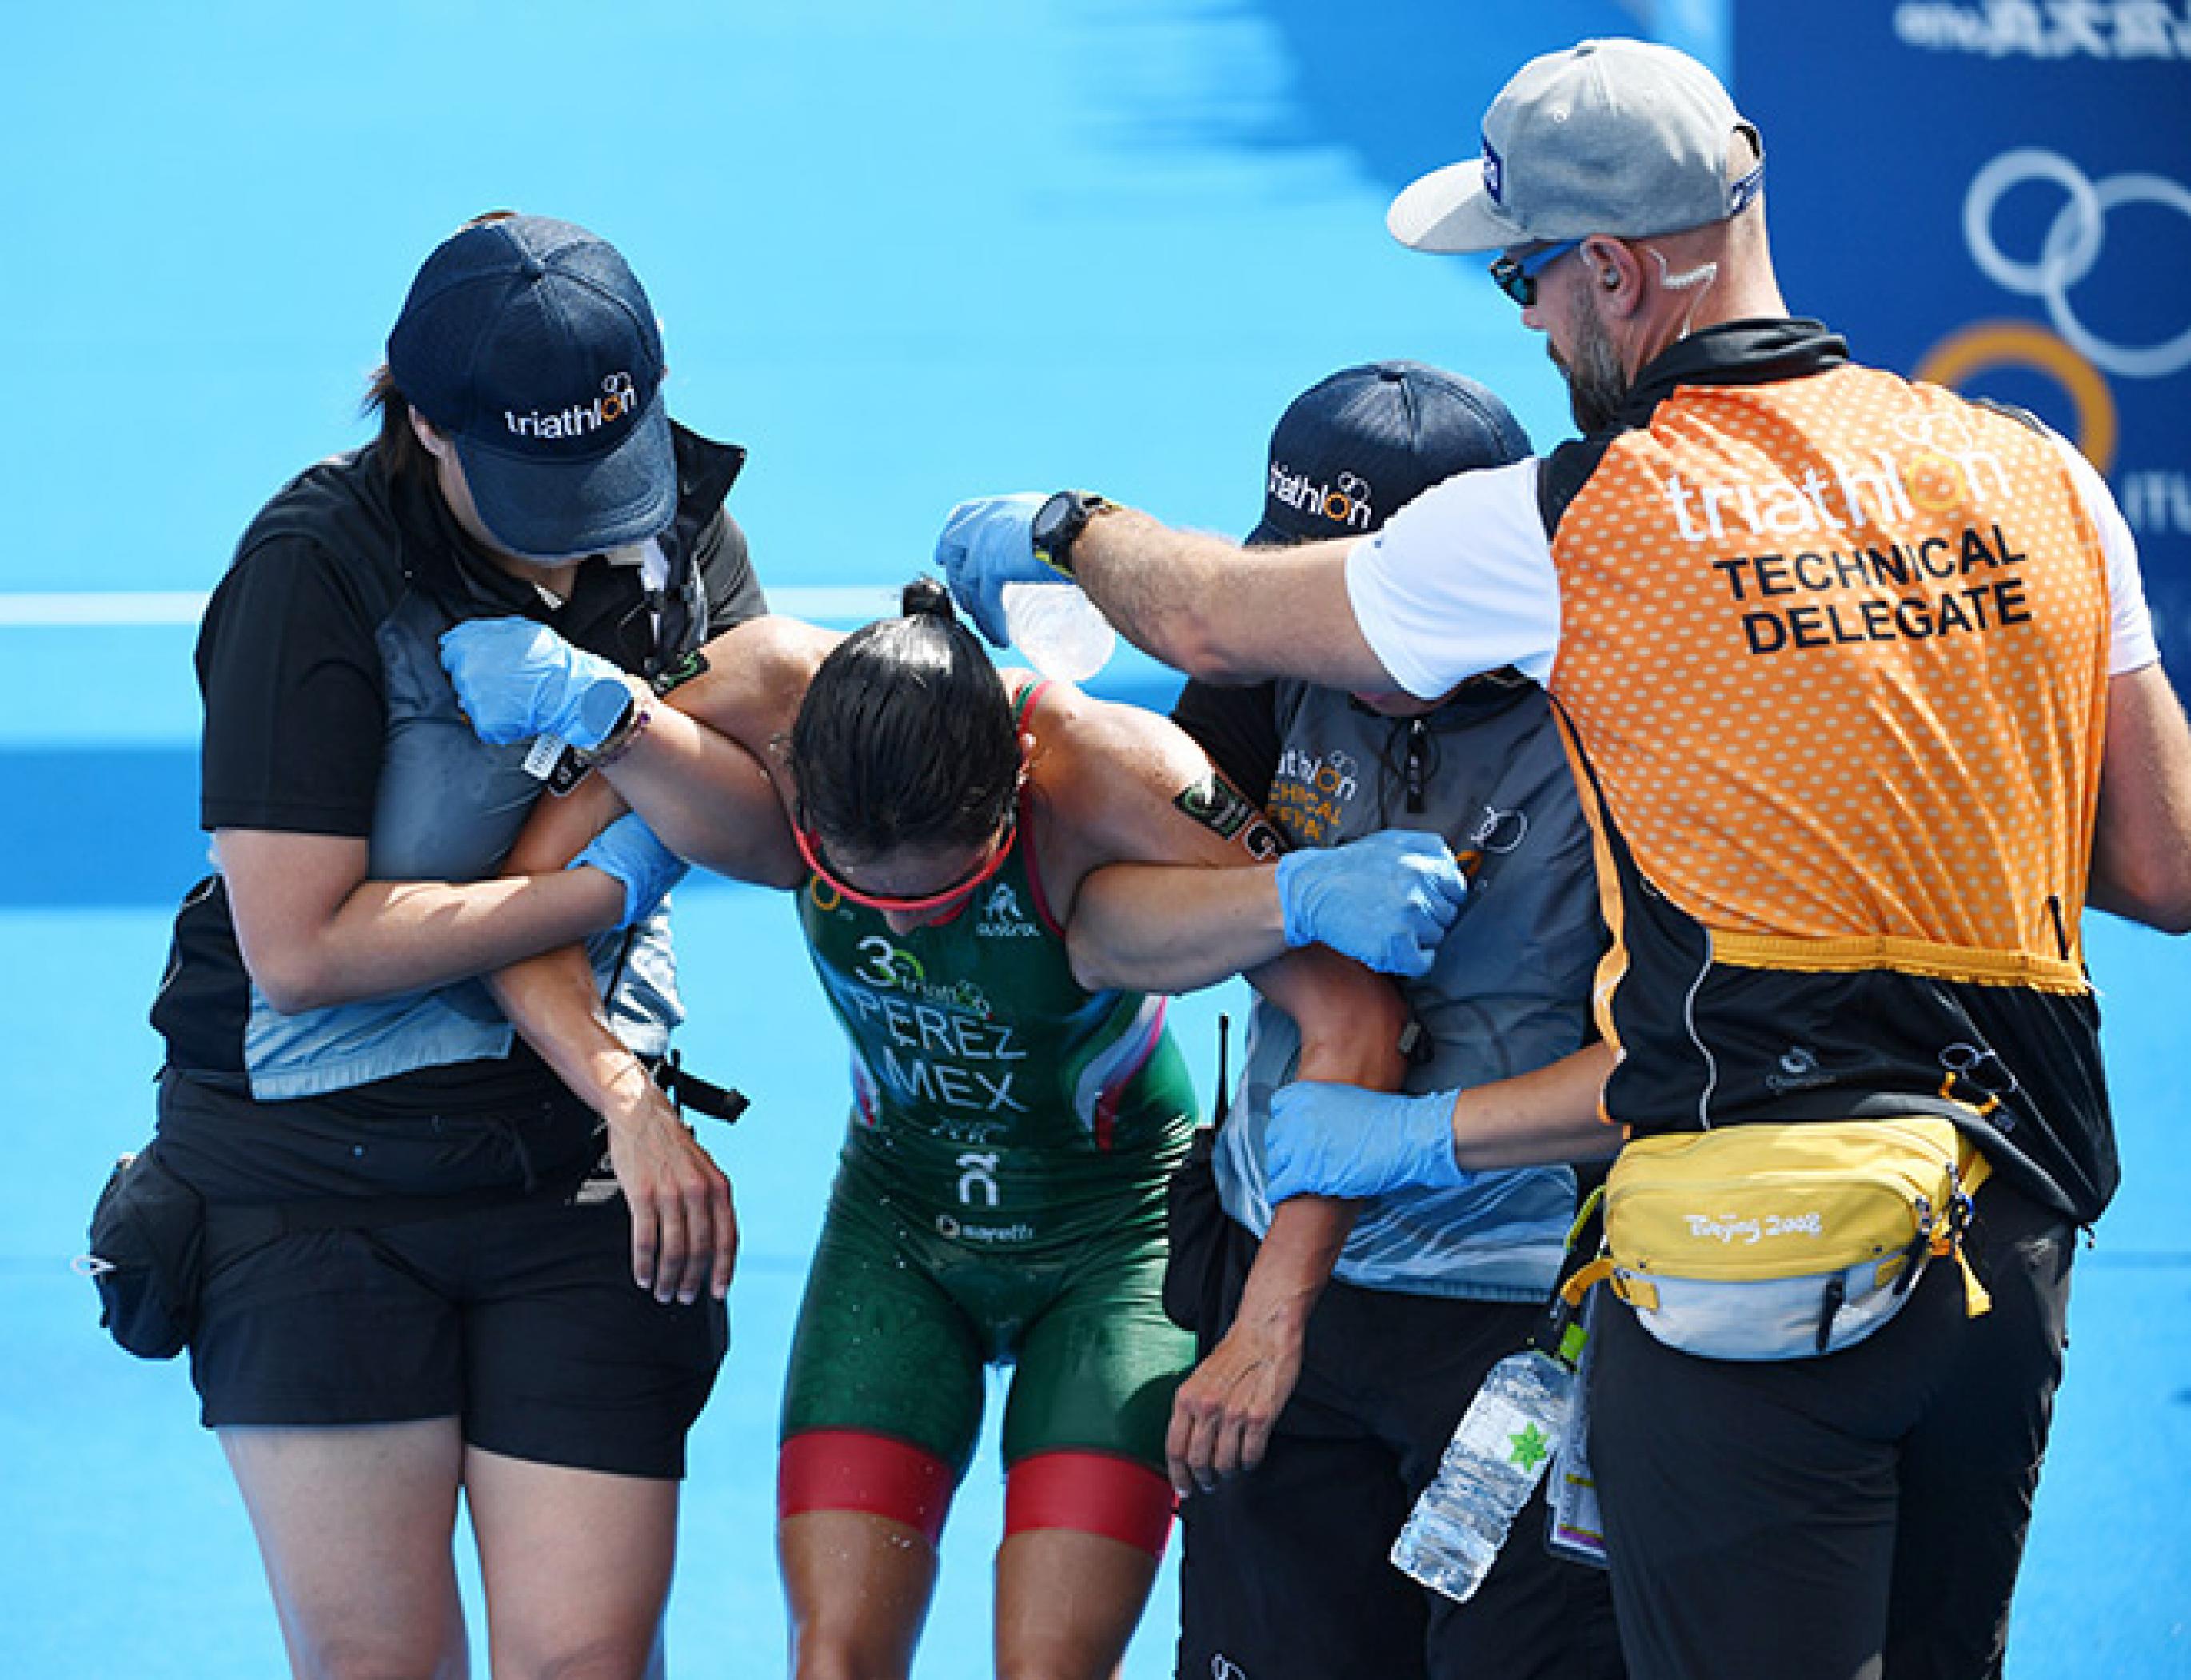 Eine Läuferin mit gesenktem Kopf wird von zwei Frauen gestützt, während ein Mann mit offizieller Weste ihr zur Kühlung Wasser über Schultern und Nacken gießt. Nach dem Frauen-Triathlon im August 2019 brauchte die Sportlerin Hilfe.